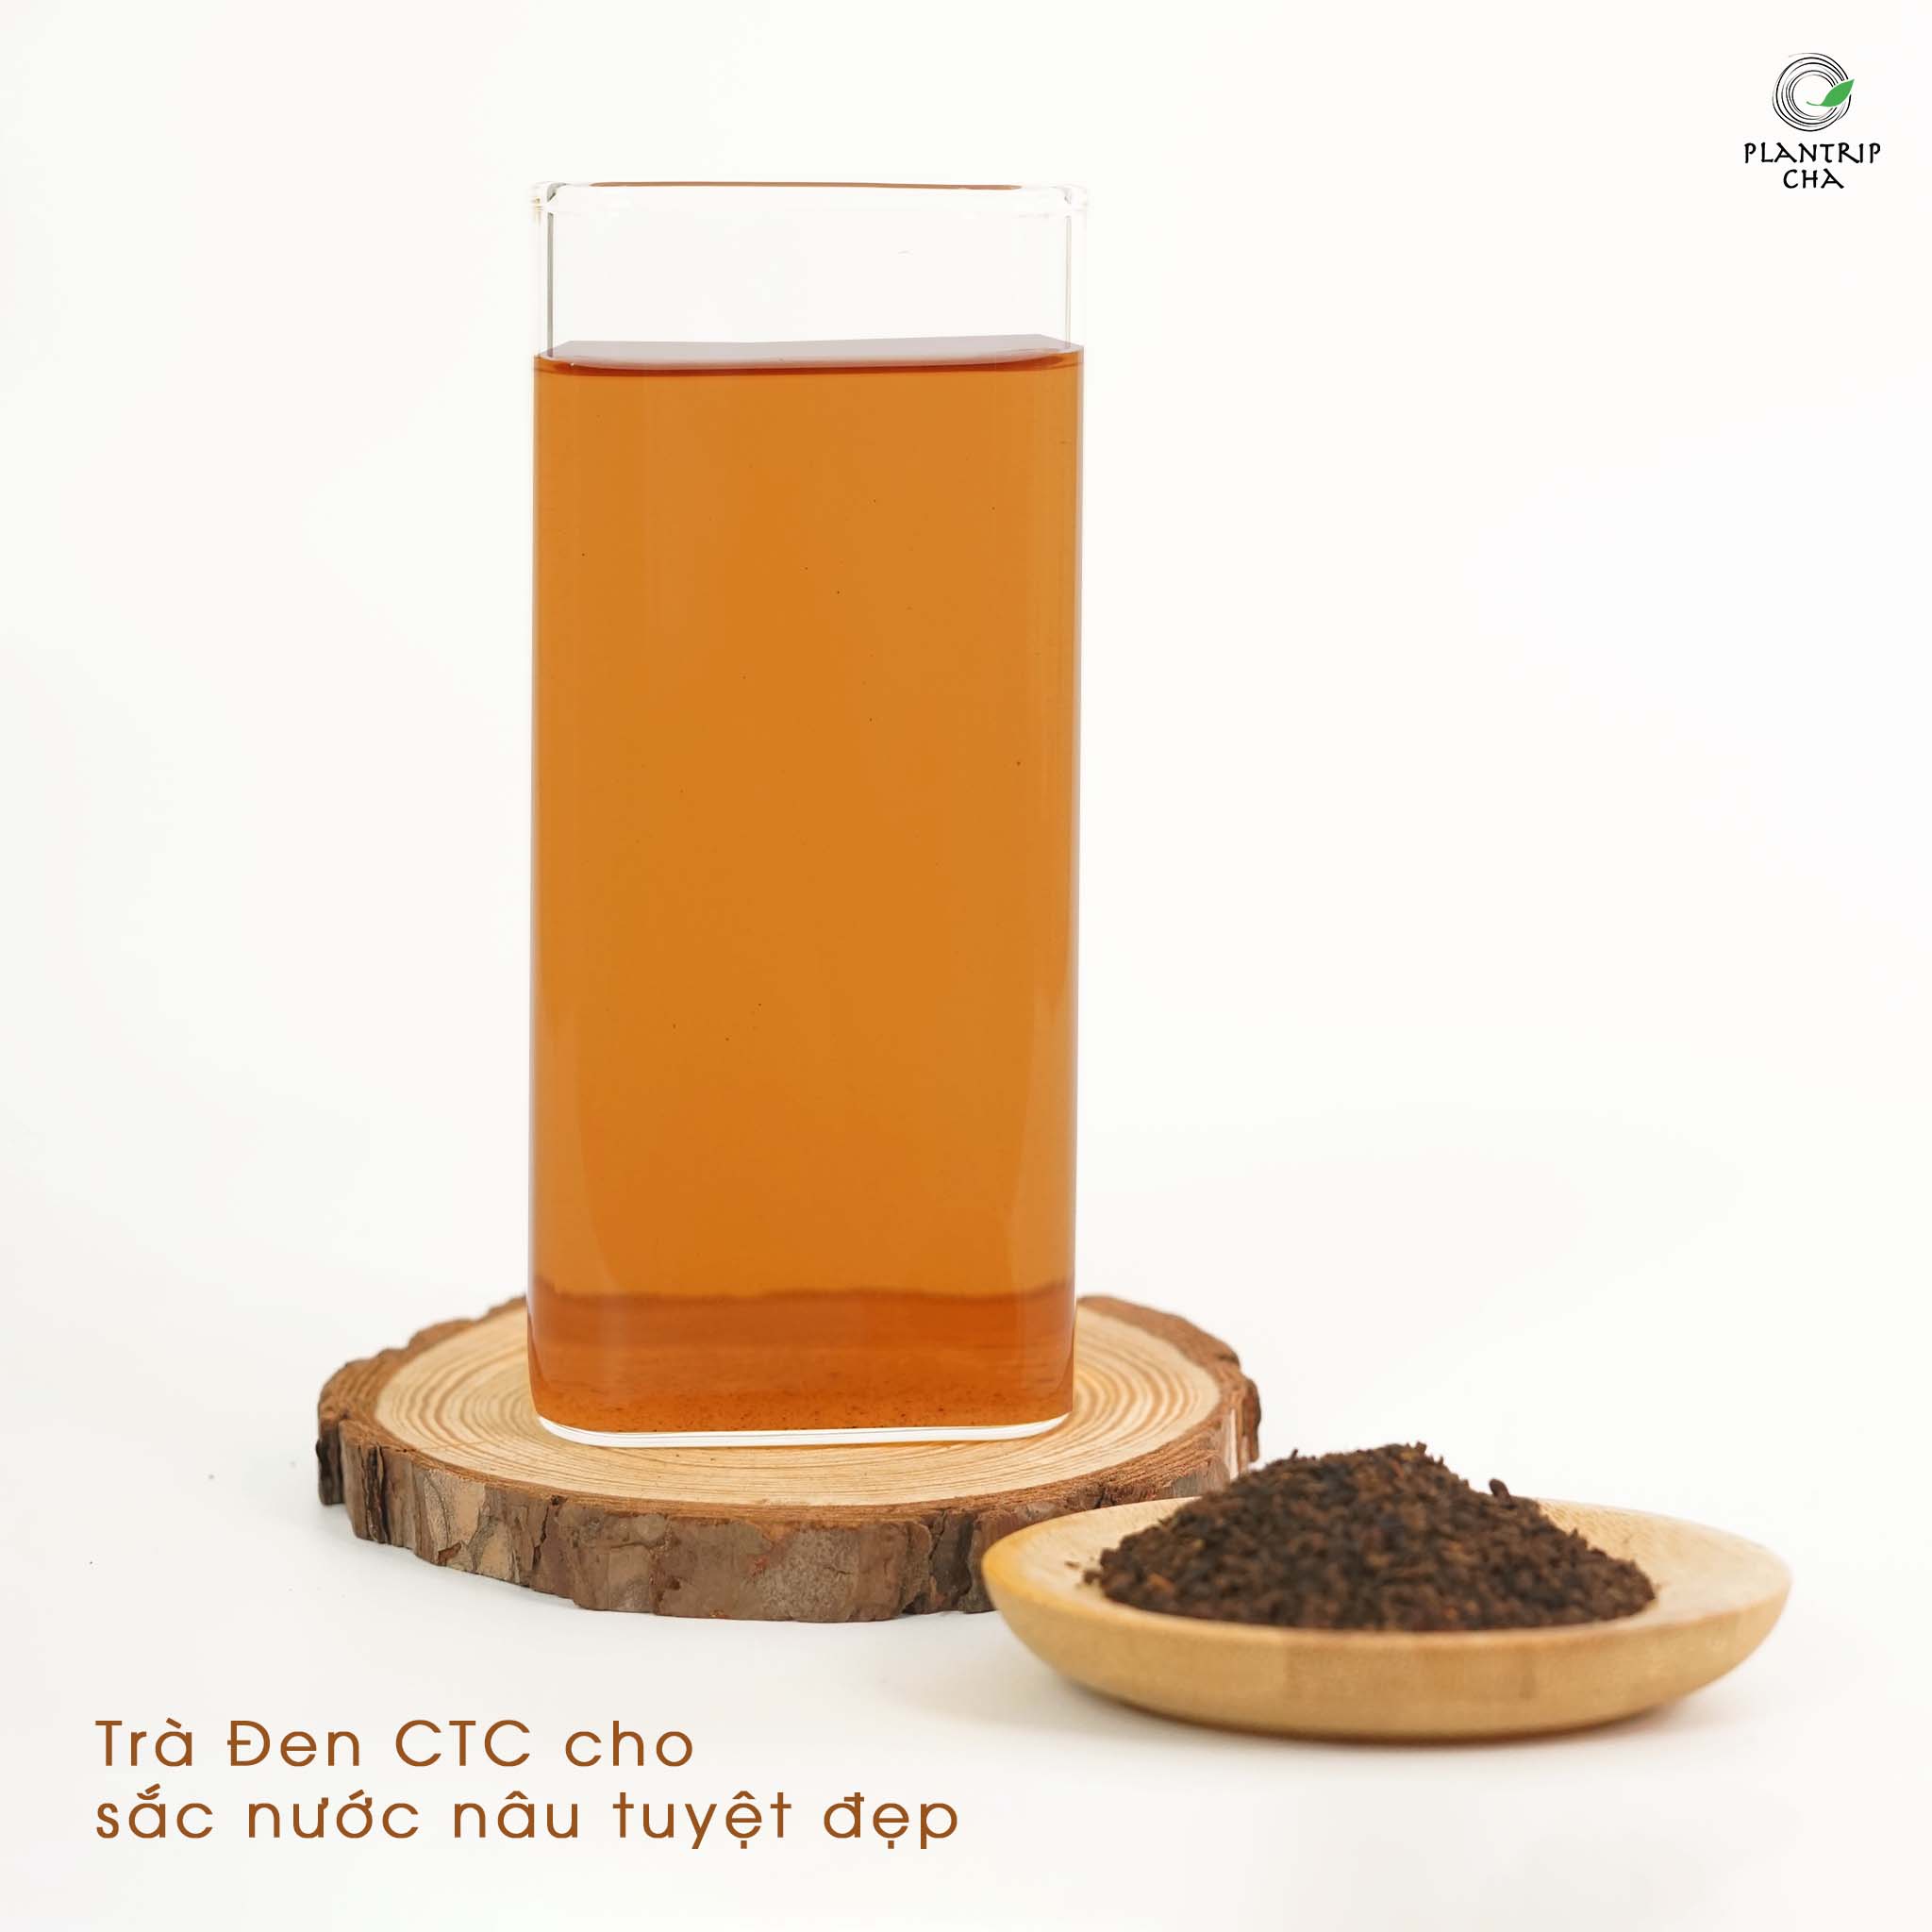 Cốt trà đen CTC với sắc nâu tuyệt đẹp.